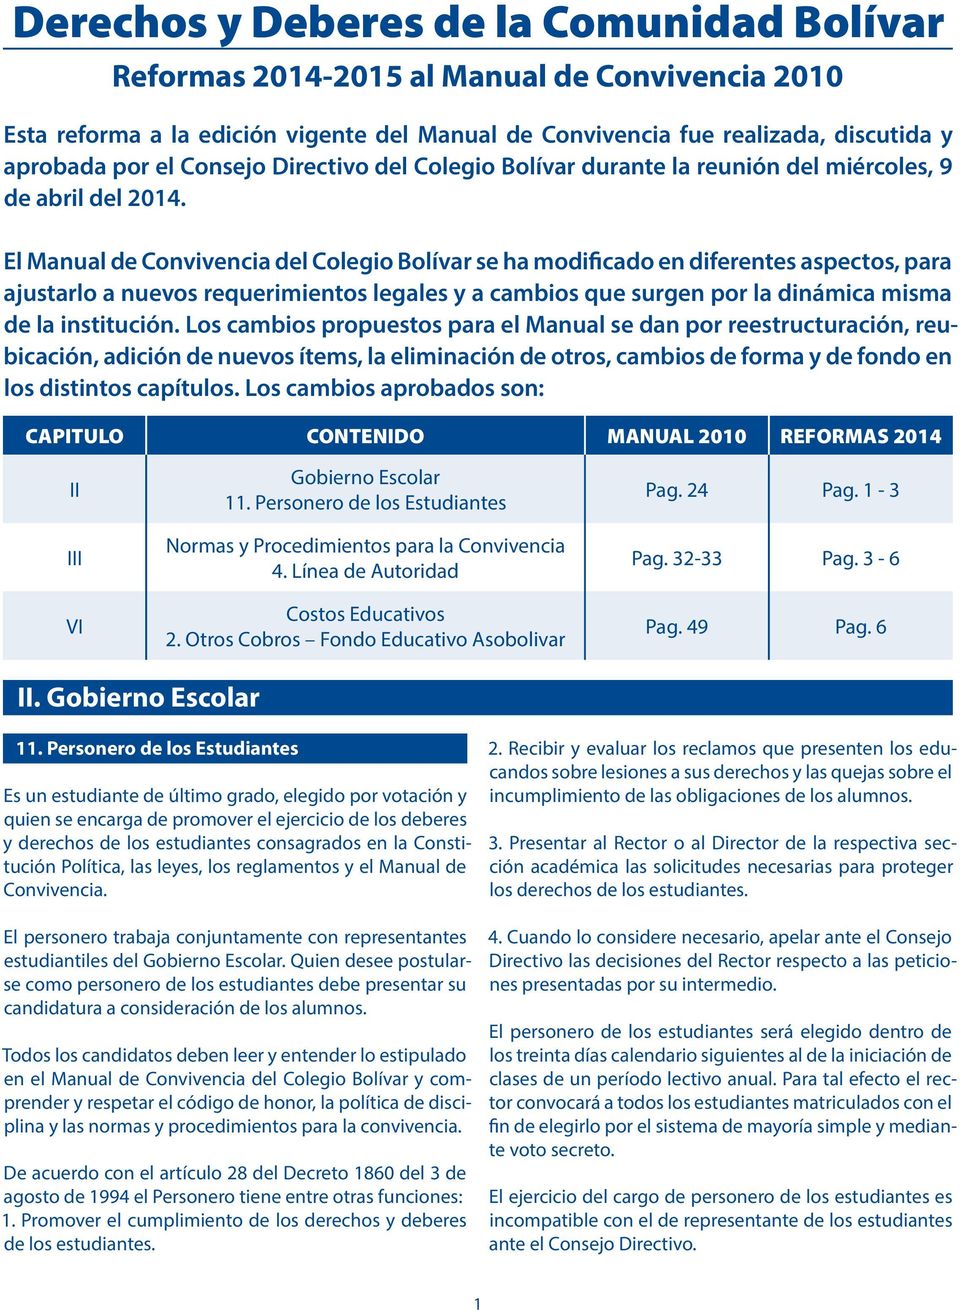 El Manual de Convivencia del Colegio Bolívar se ha modificado en diferentes aspectos, para ajustarlo a nuevos requerimientos legales y a cambios que surgen por la dinámica misma de la institución.